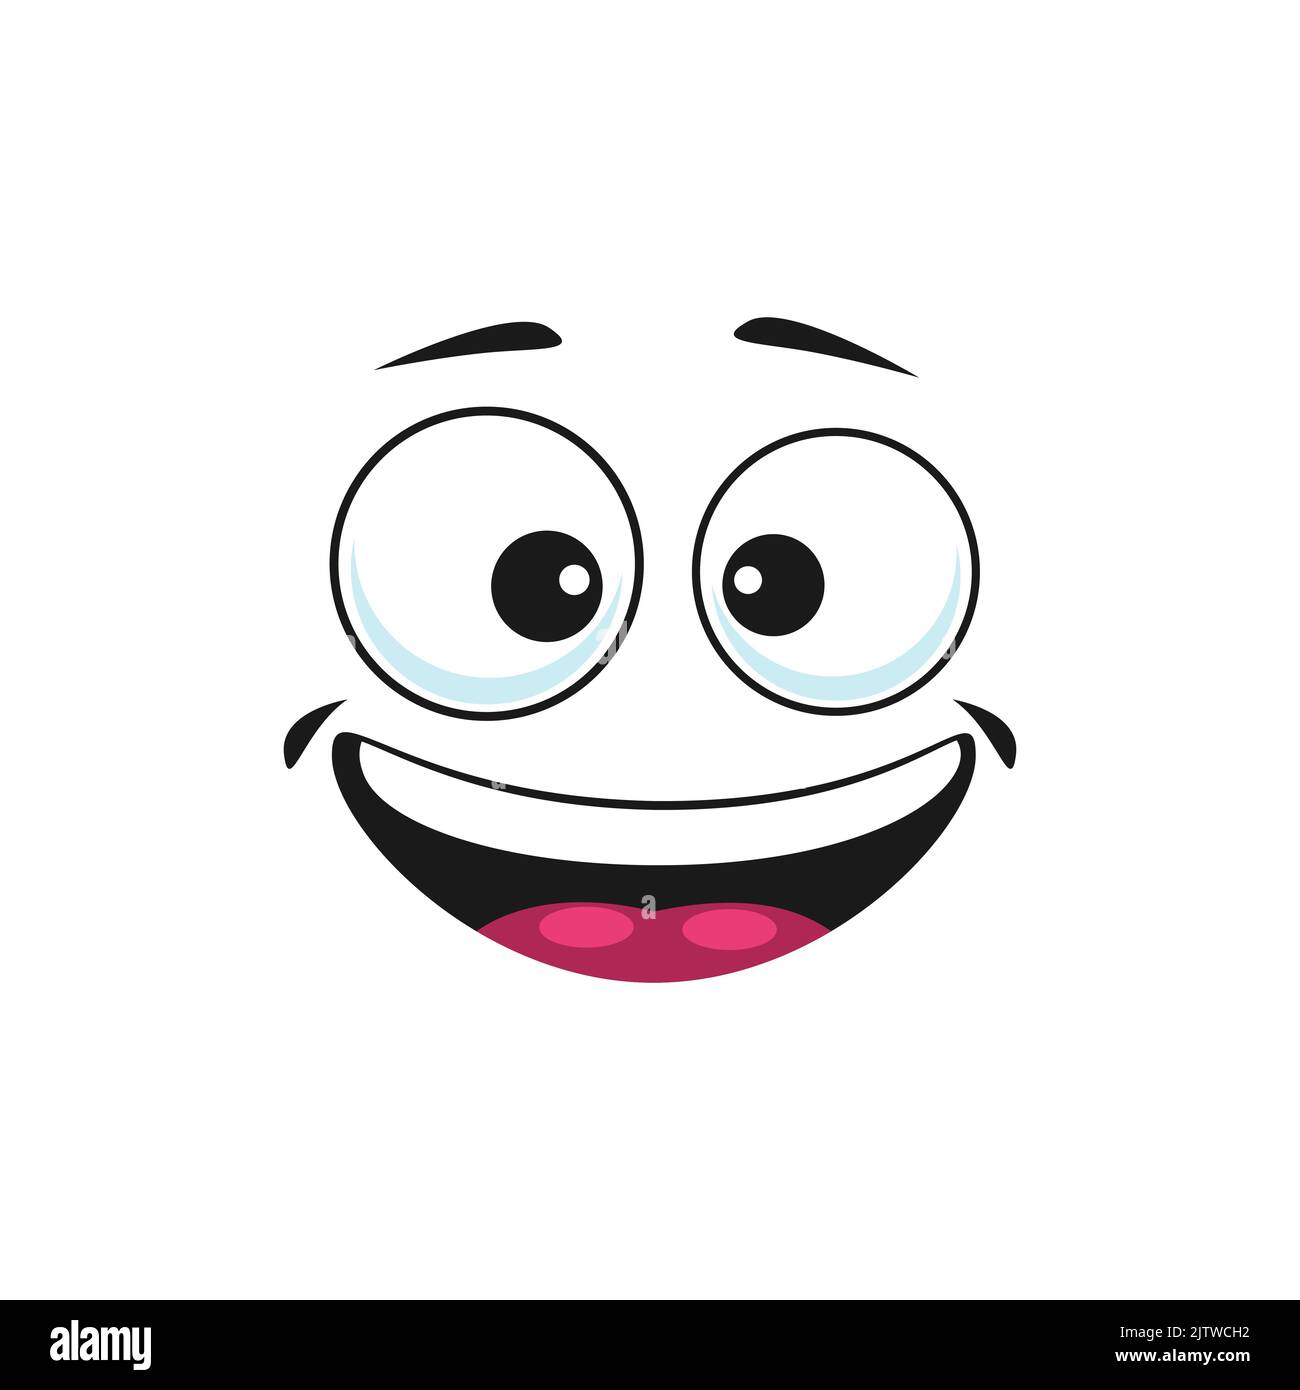 Buon cartone animato faccia isolato vettore largo sorriso felice emoji facciale. Divertente emozione gioiosa, volto comico con bocca sorridente e toothy beato e occhi goggle rotondi isolati su sfondo bianco Illustrazione Vettoriale